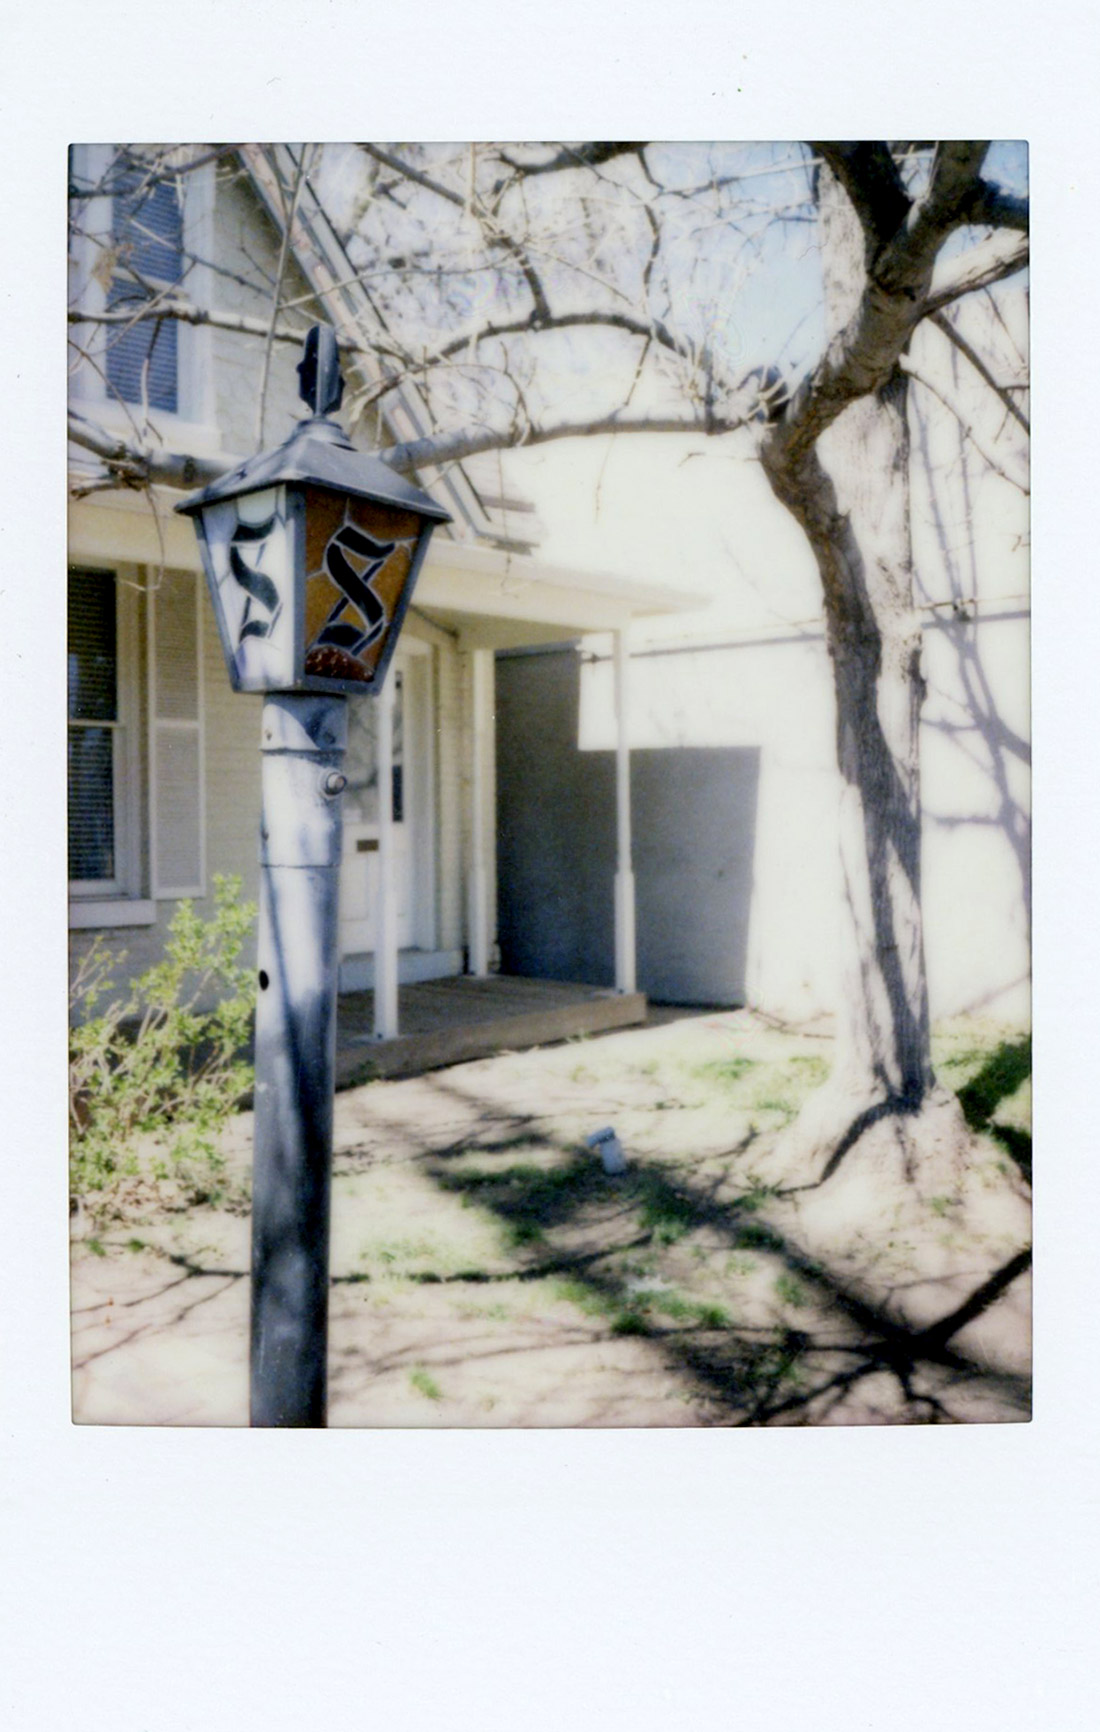 Monogrammed porch light